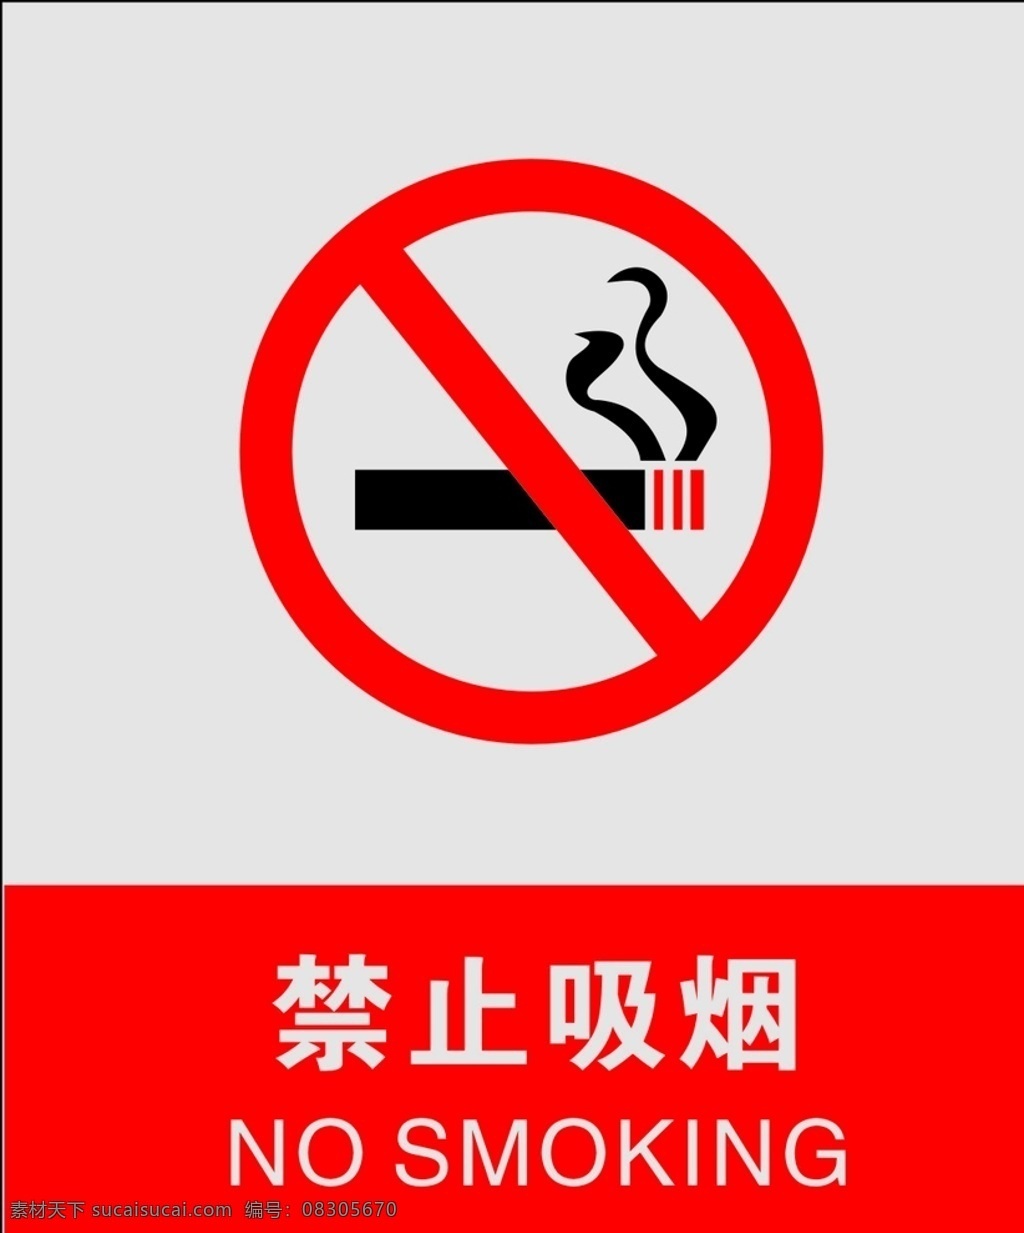 禁止吸烟 no smoking 严禁吸烟 禁止抽烟 严禁抽烟 标志图标 公共标识标志